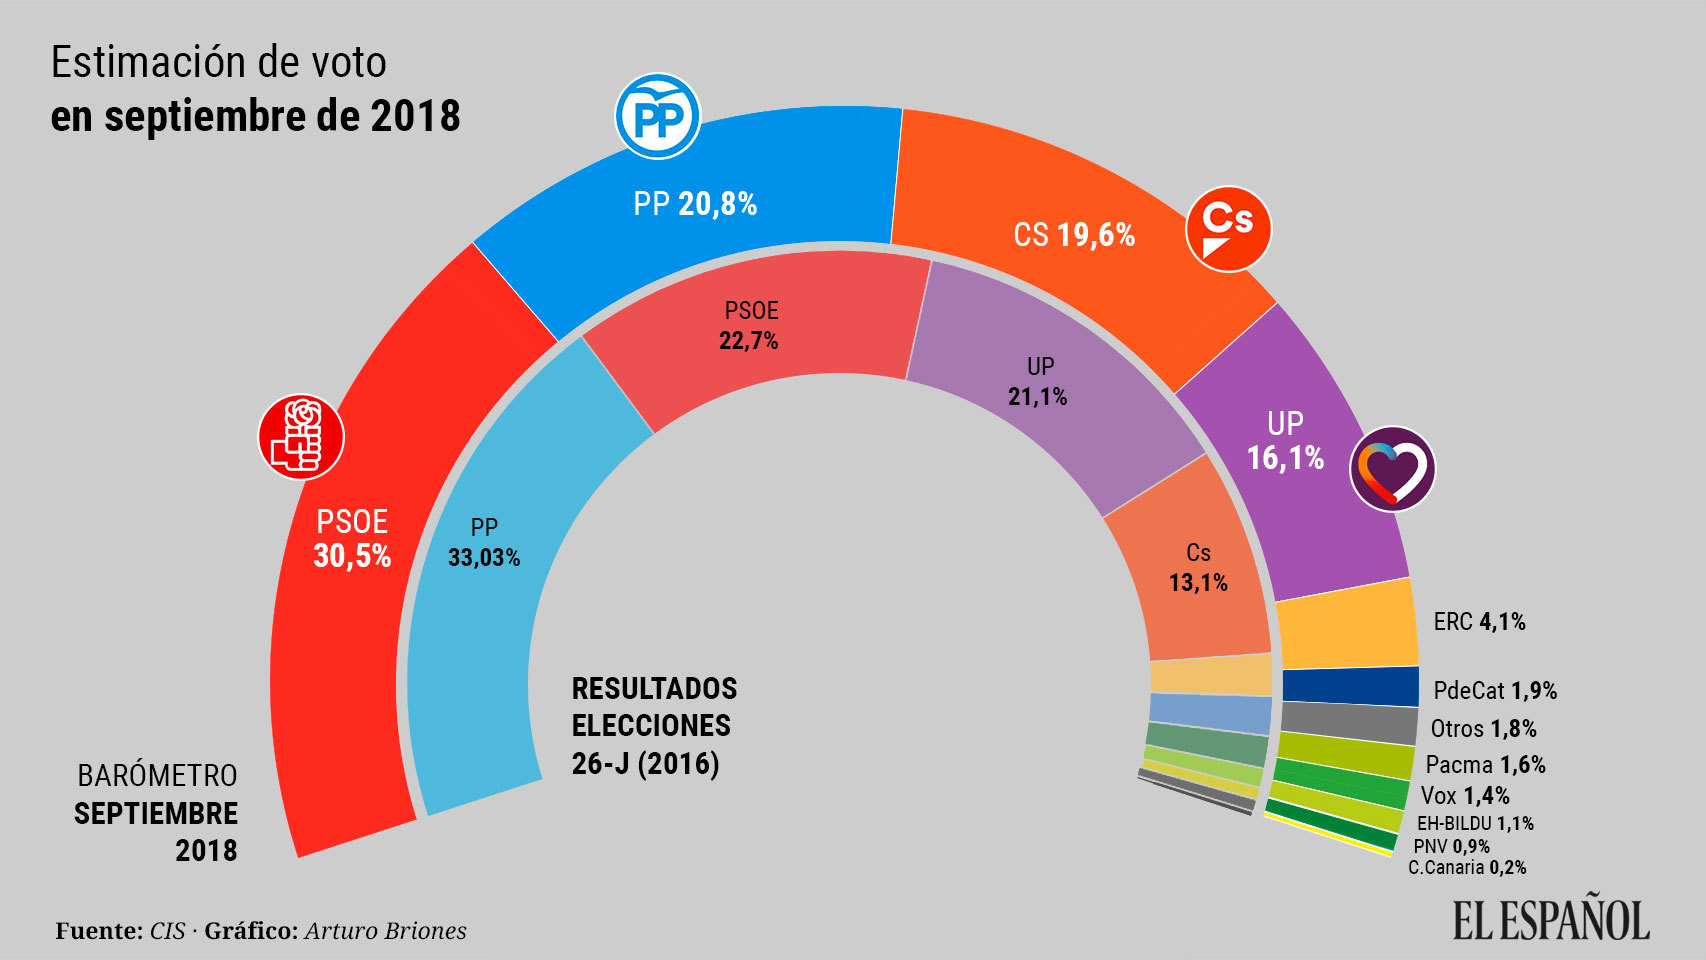 El CIS de Tezanos otorga al PSOE el 30,5% y coloca al PP de Casado por encima de Cs